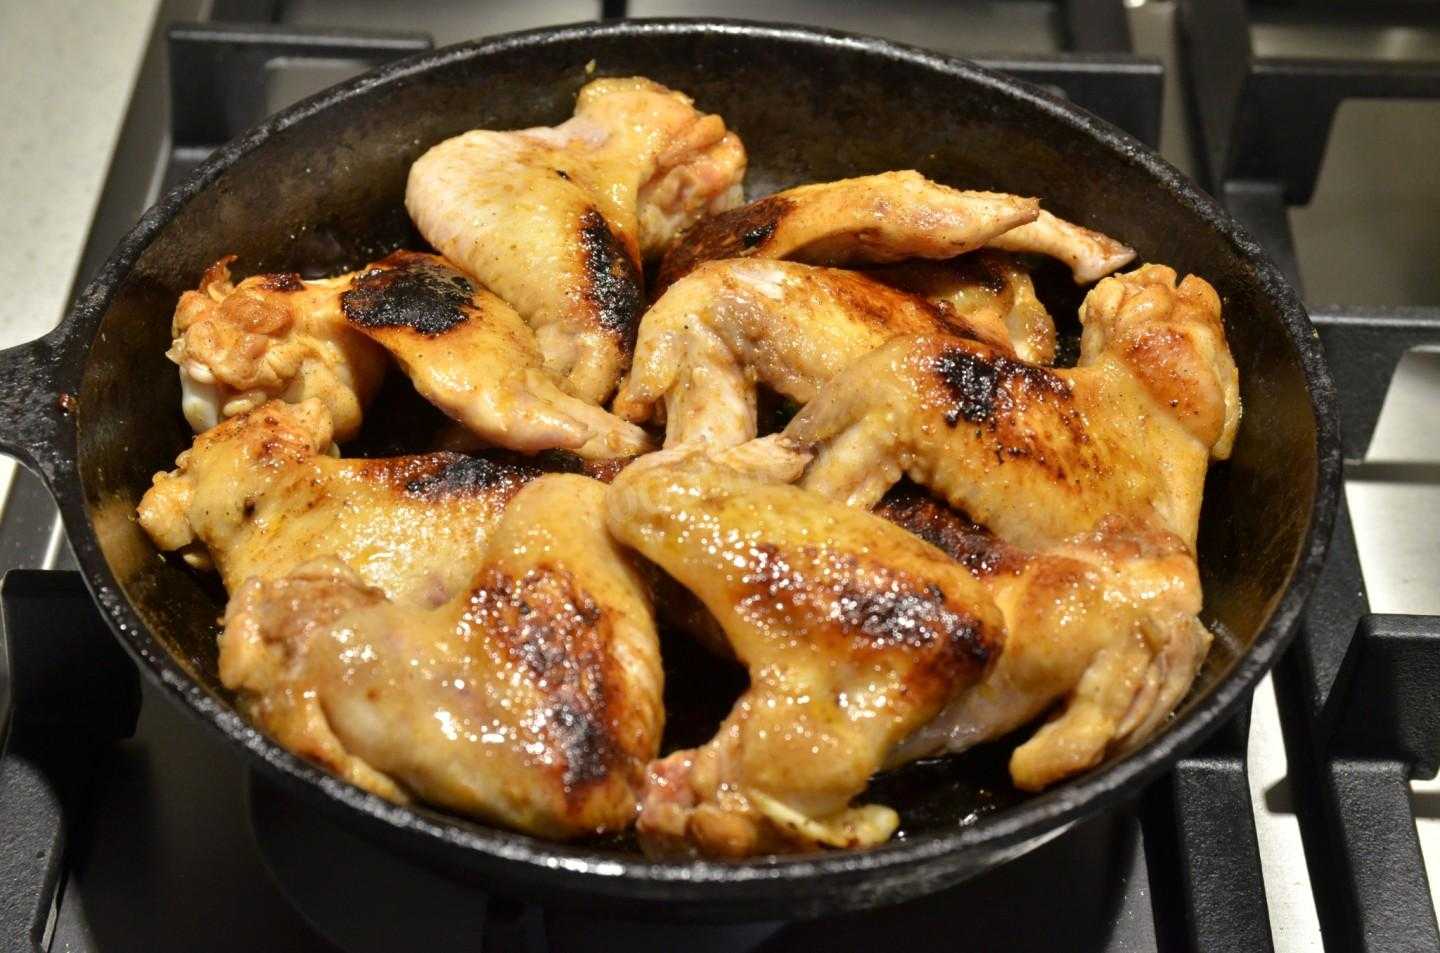 Крылышки куриные на сковороде рецепт с фото пошагово в домашних условиях